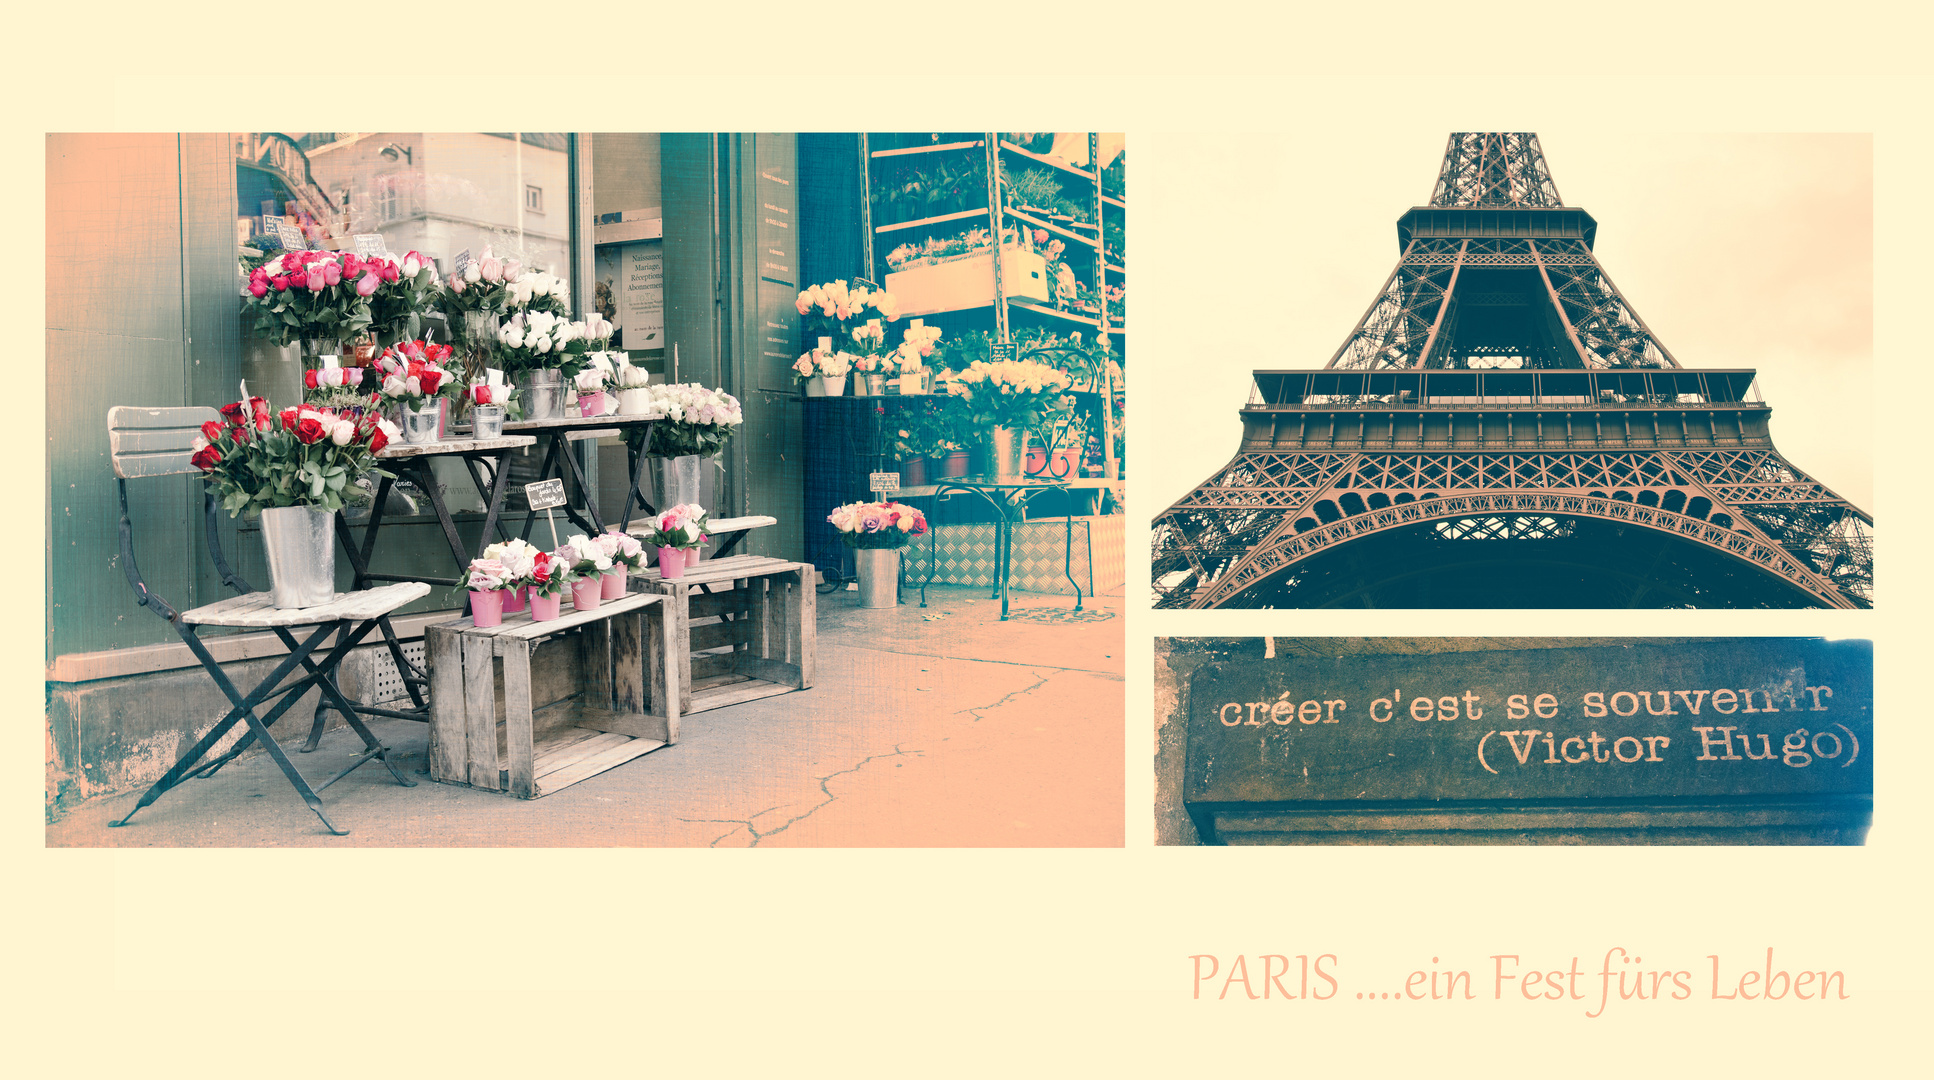 Paris - ein Fest fürs Leben